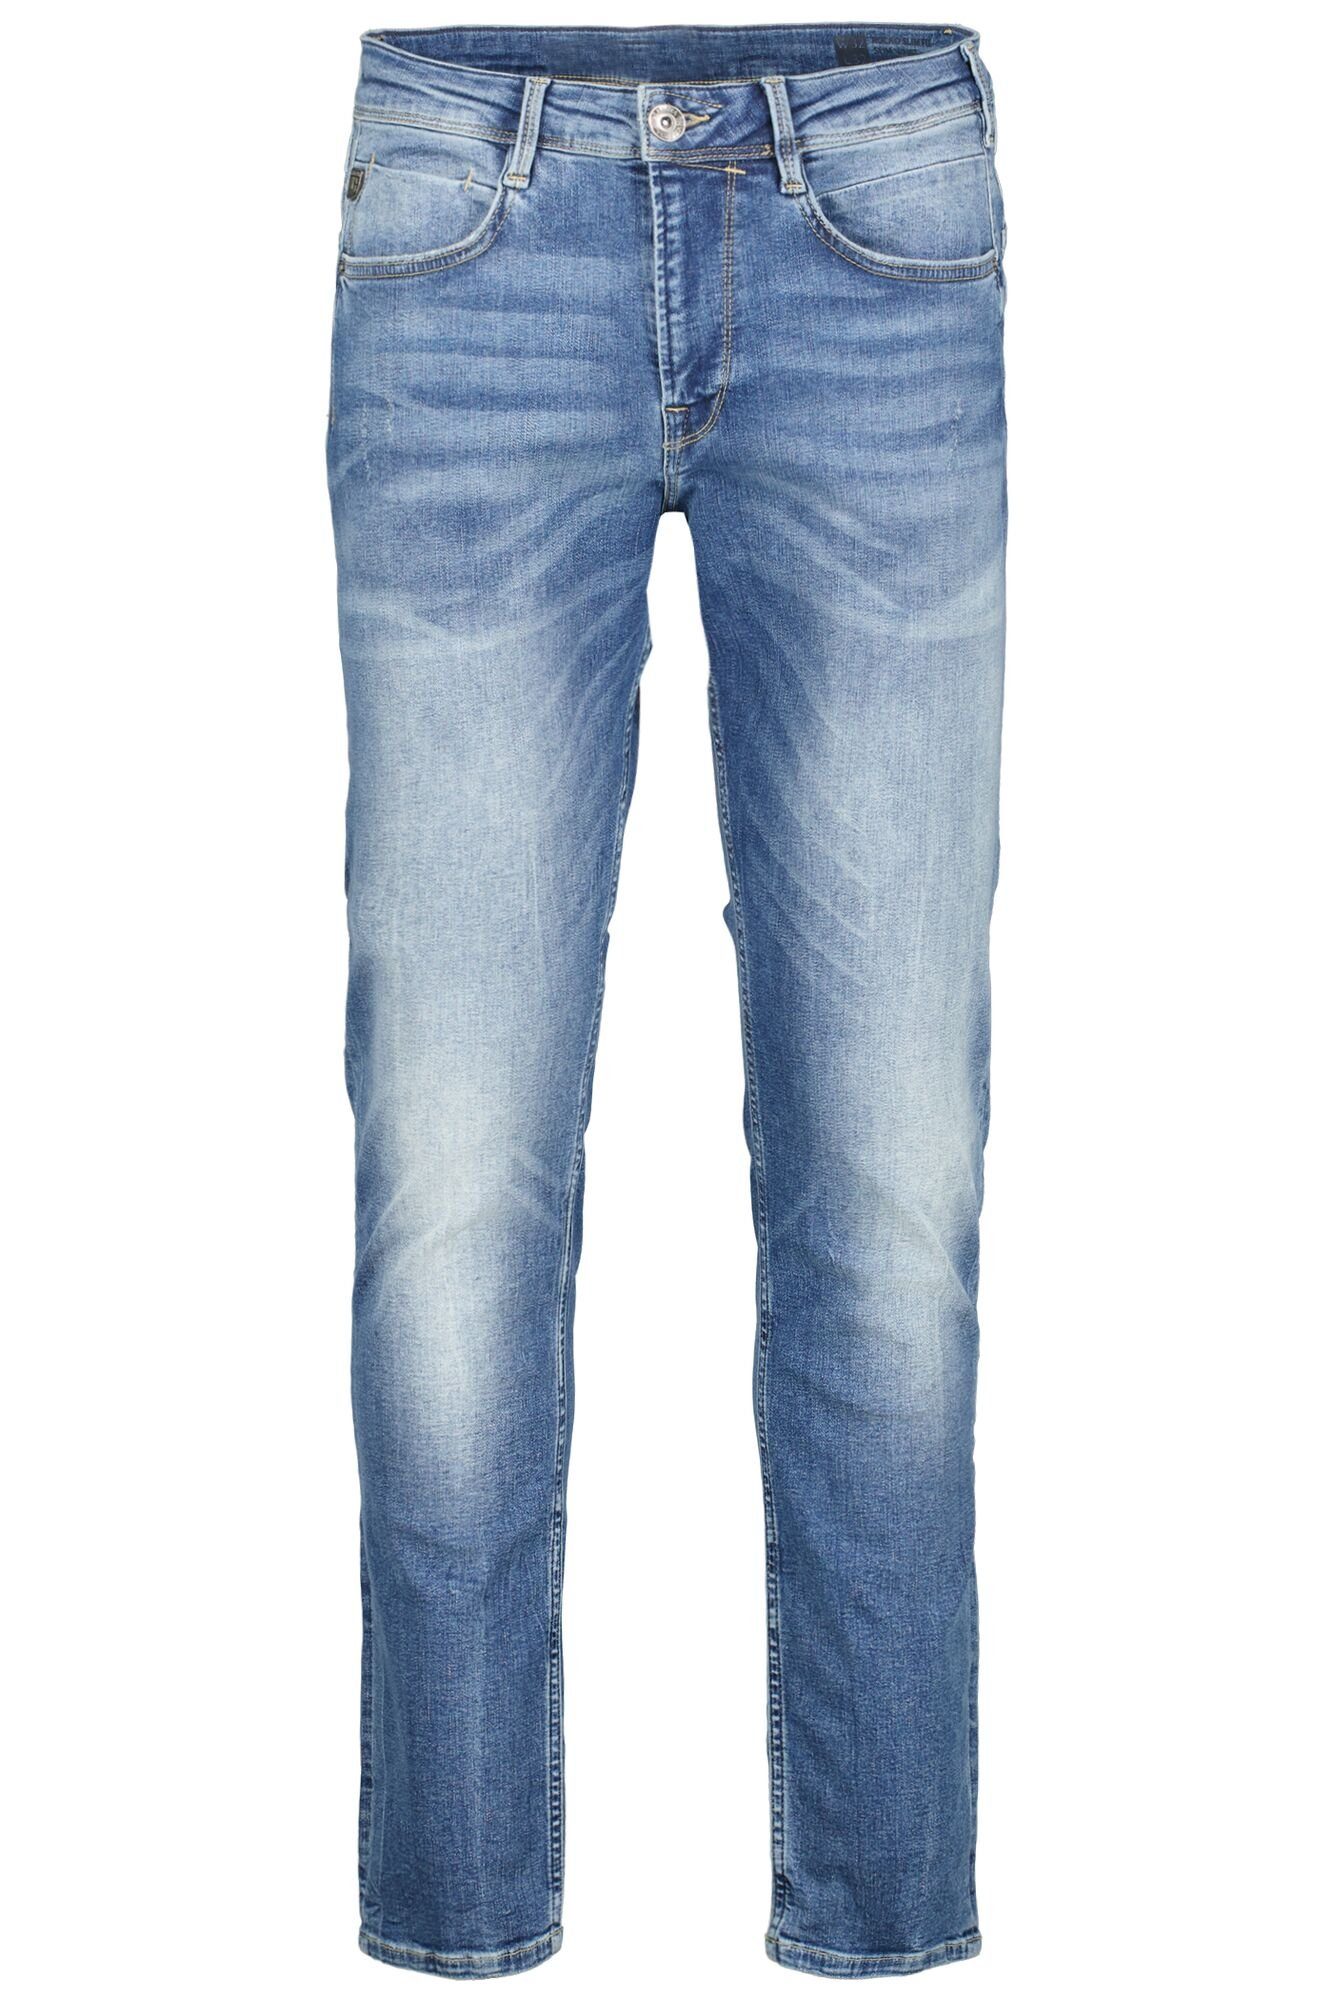 Garcia 5-Pocket-Jeans Rocko in verschiedenen blue vintage Waschungen used